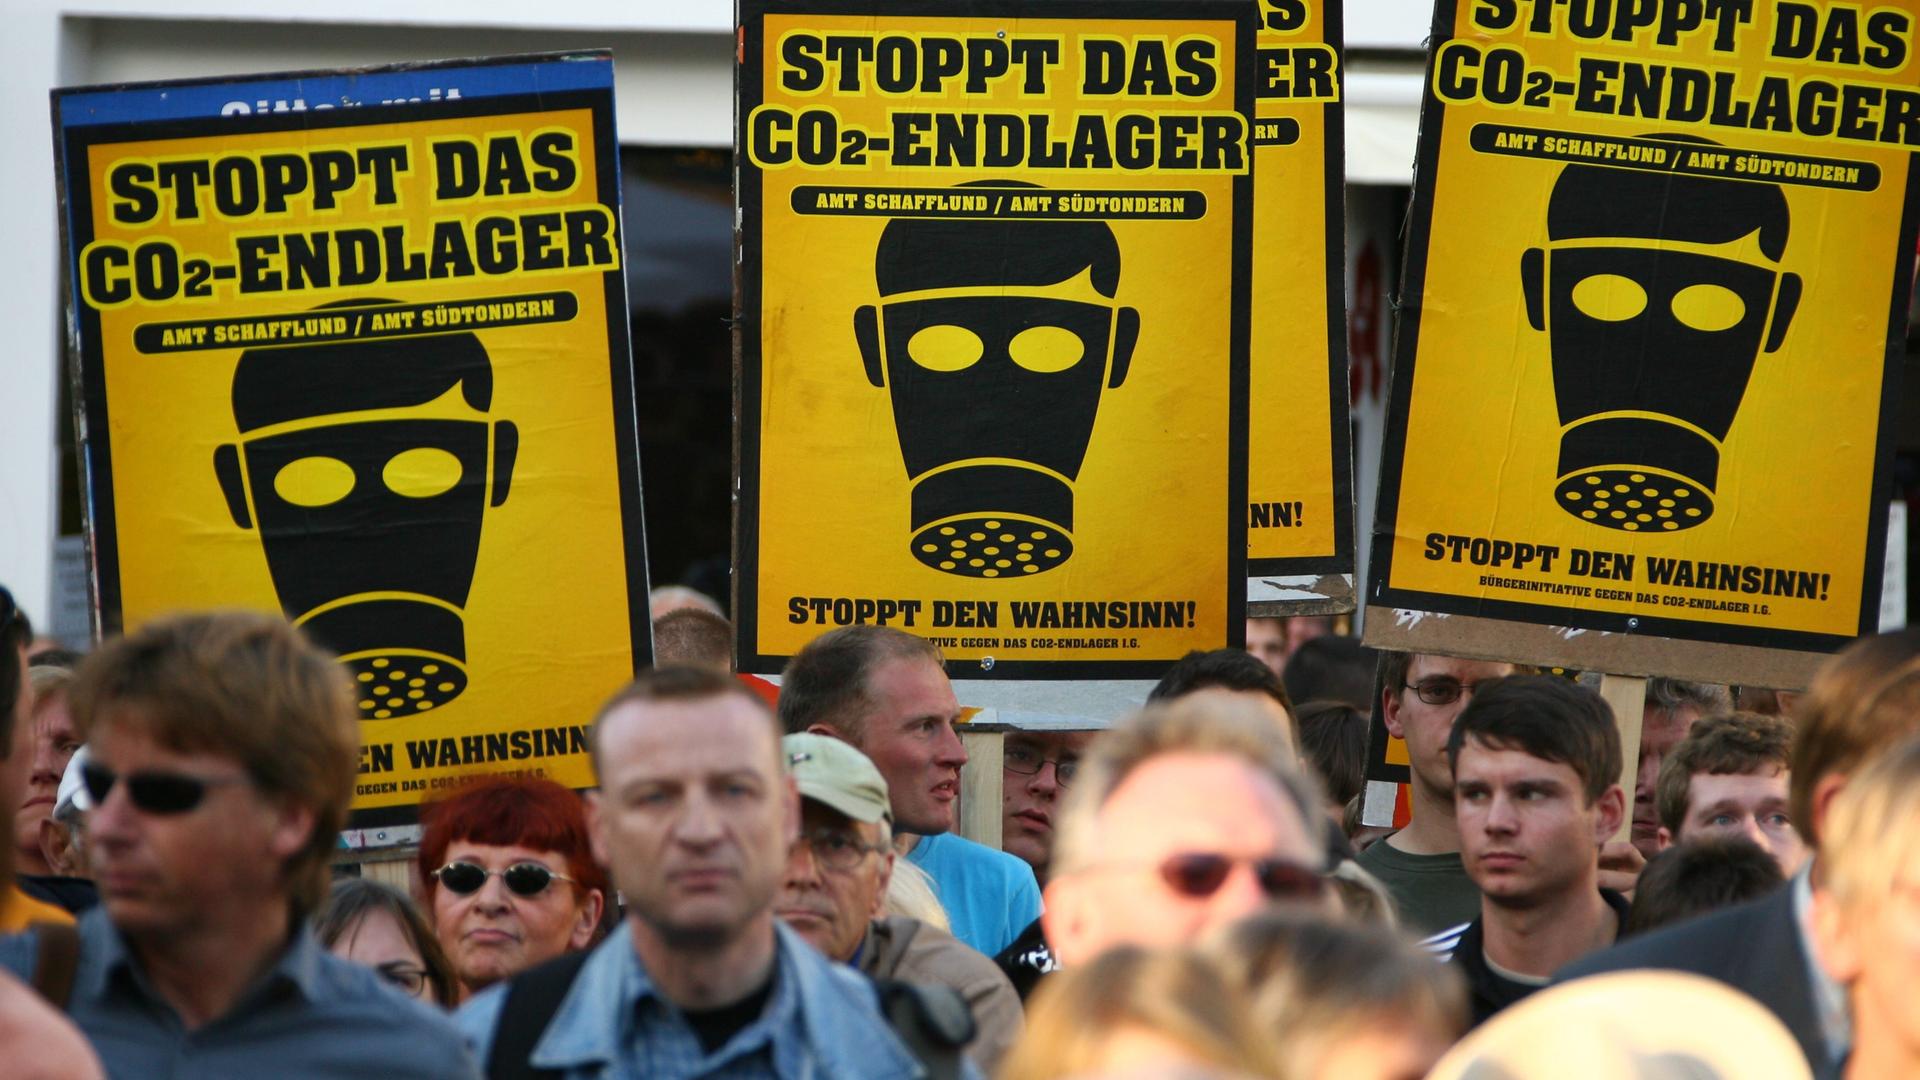 Demonstranten tragen gelbe Schilder, auf denen schwarze Gasmasken und die Aufschrift "Stoppt das CO2-Endlager" aufgedruckt sind.